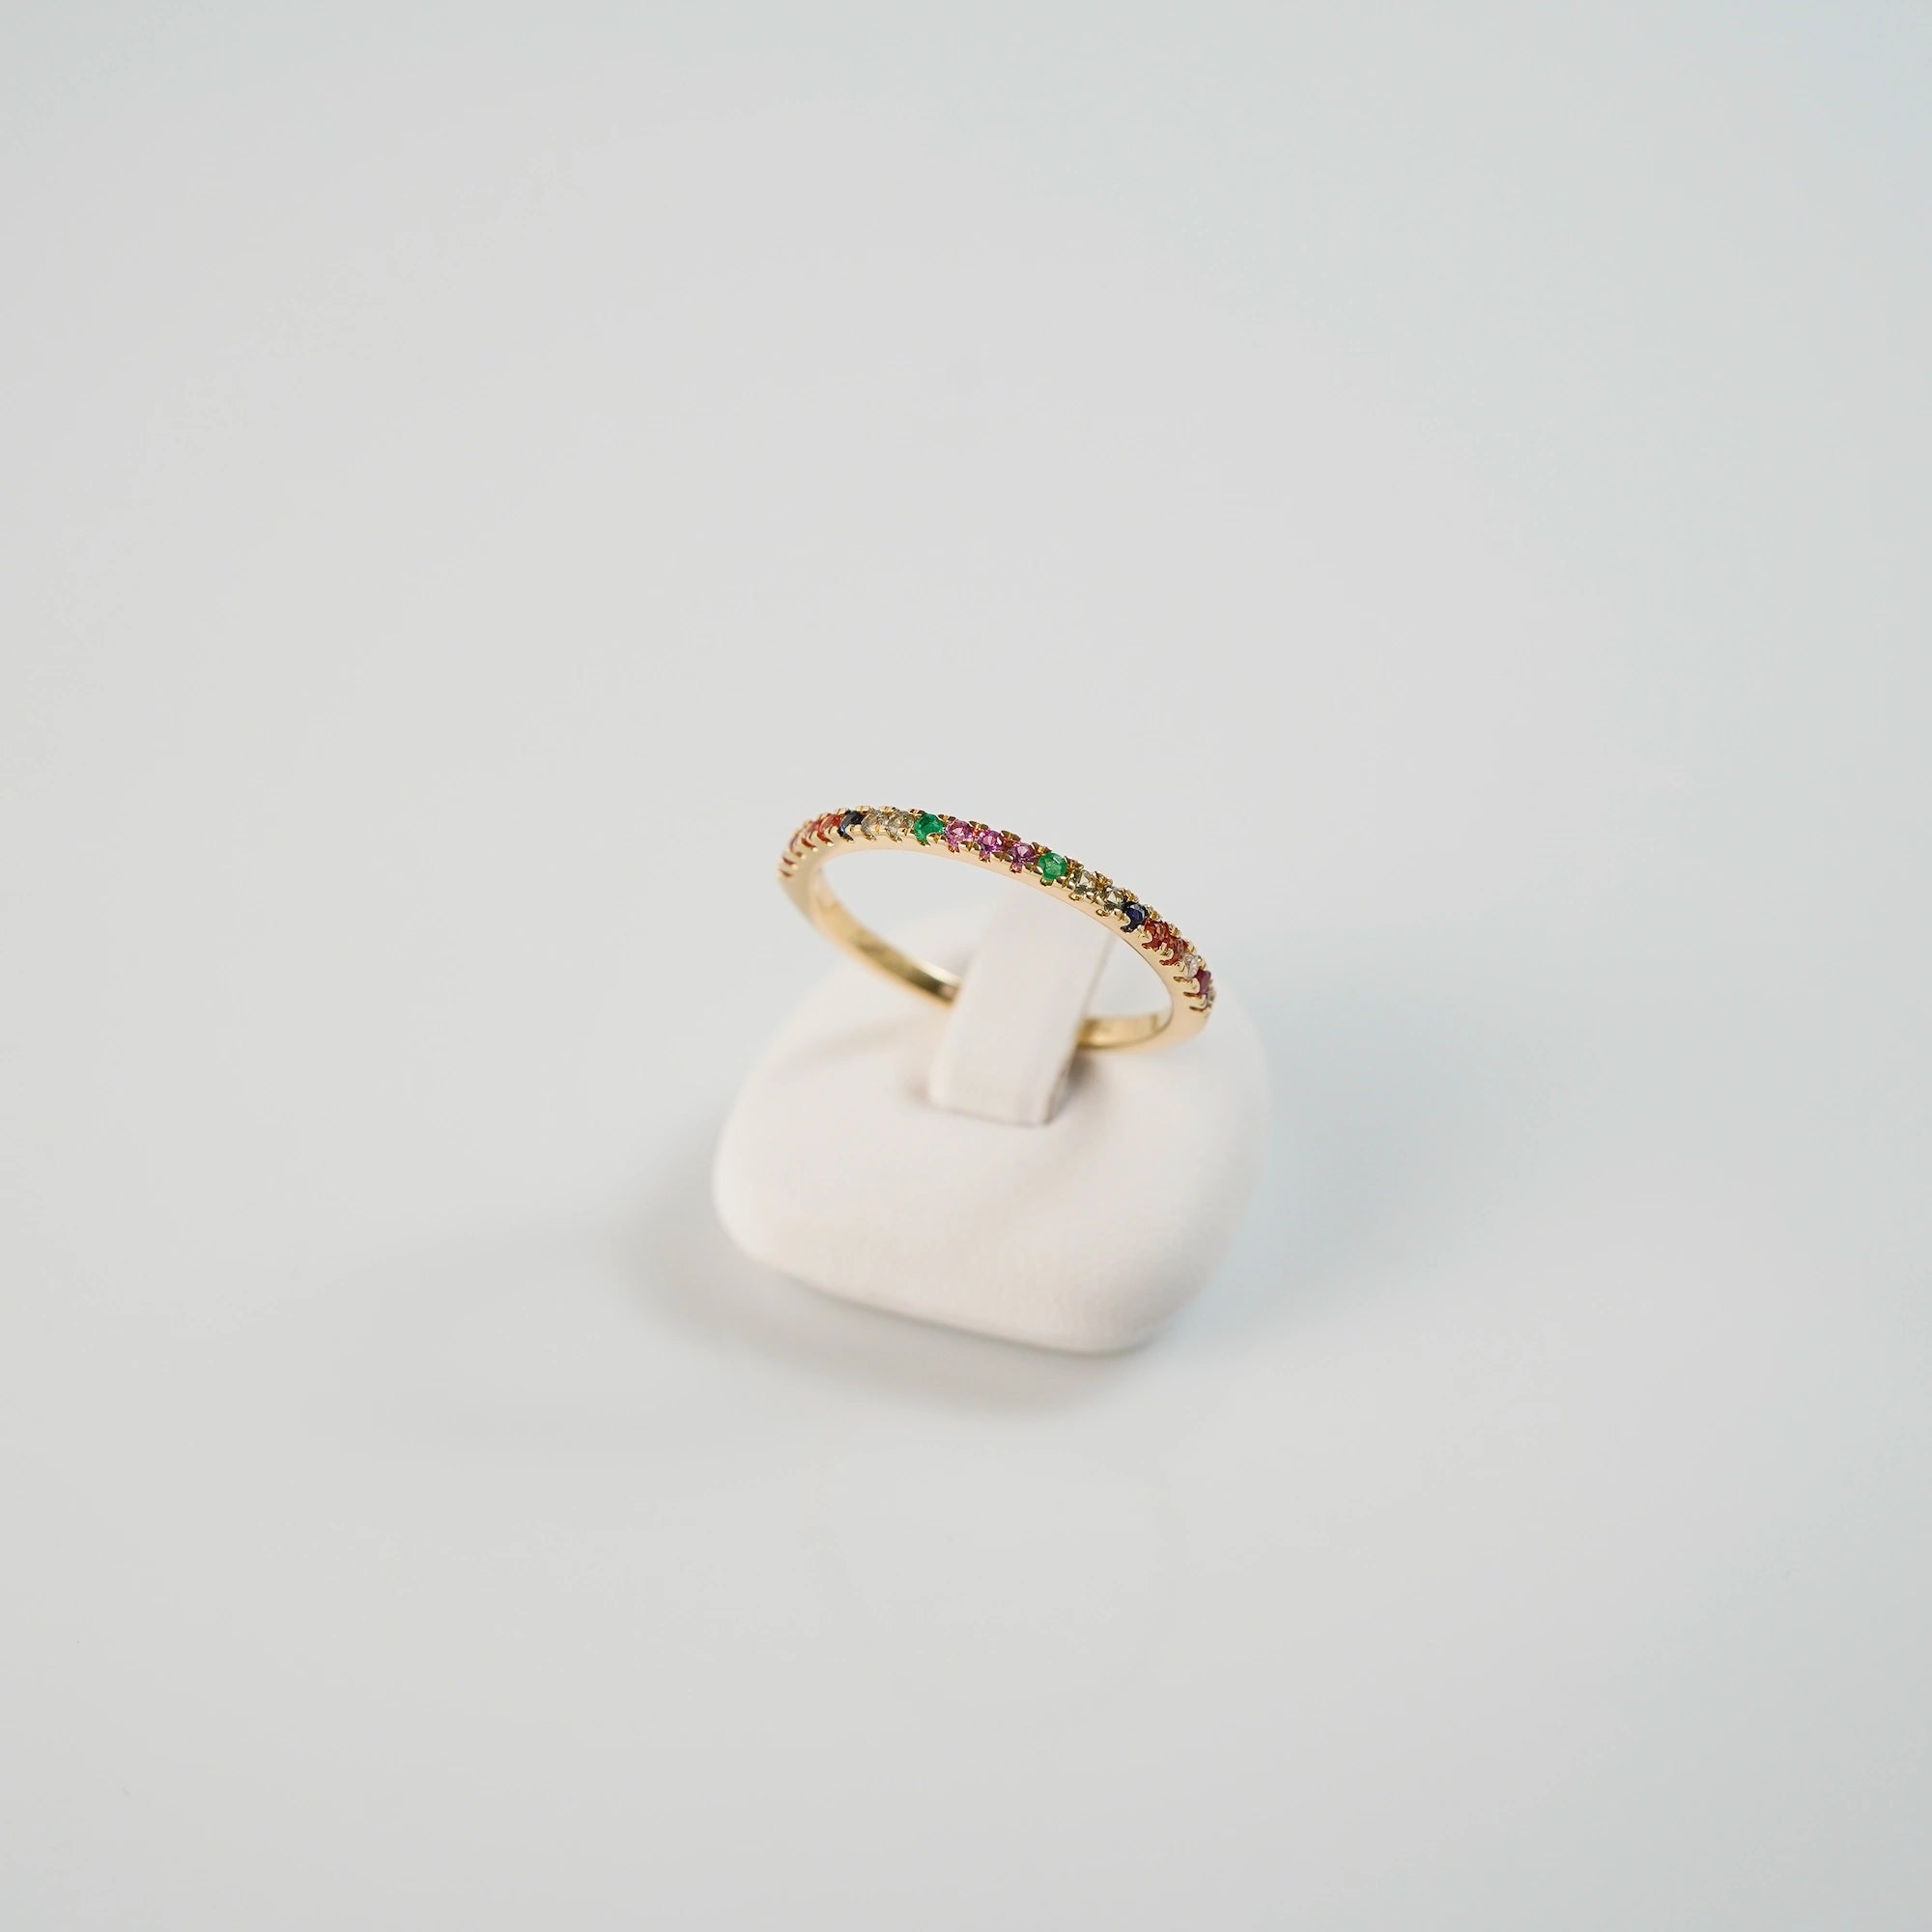 Produktfoto des liegenden Memoire-Rings mit einem Rainbow-Setting aus verschiedenen Edelsteinen mit einem bunten Farbspiel, auf einem Ringständer präsentiert